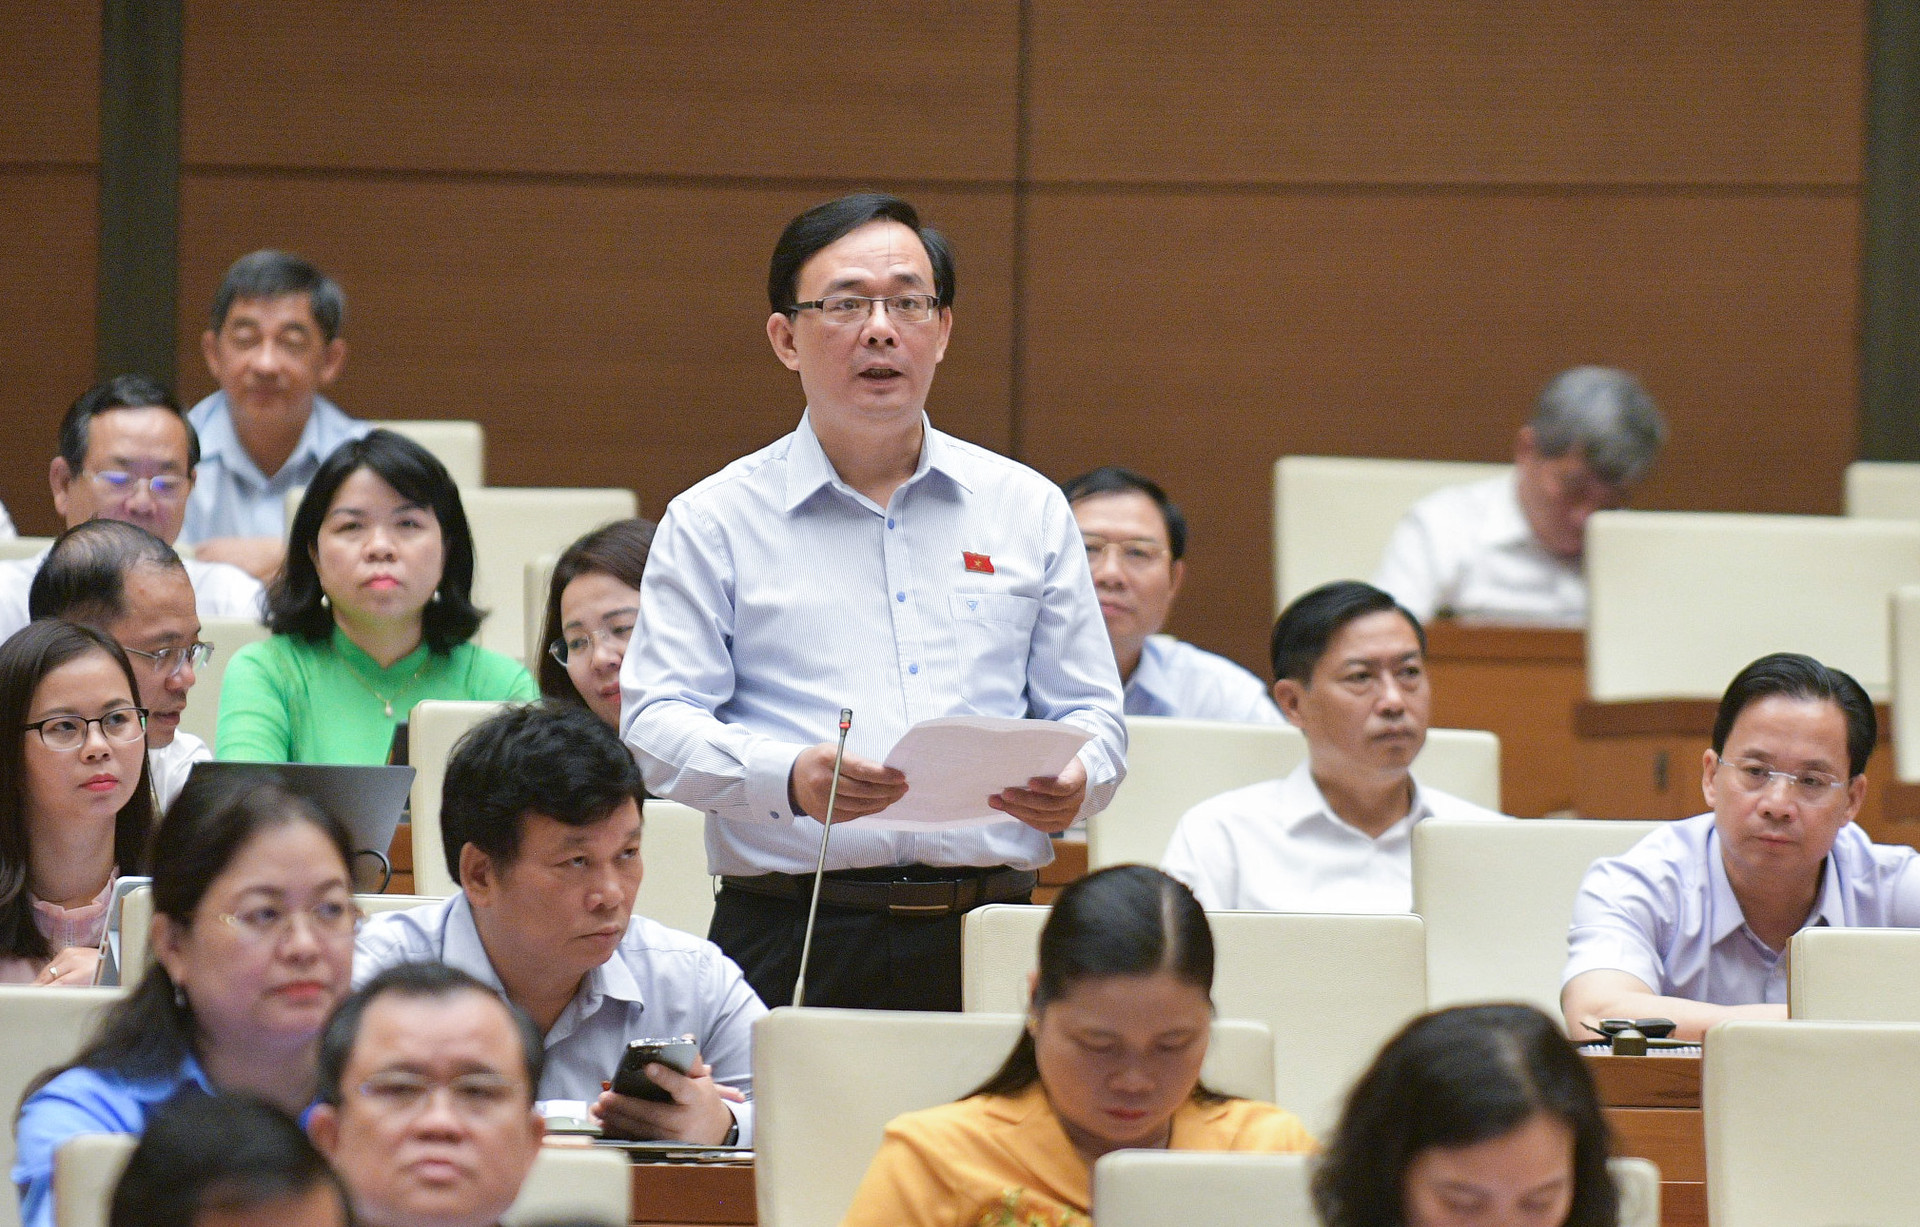 Đại biểu Triệu Quang Huy, Đoàn Đại biểu Quốc hội tỉnh Lạng Sơn nêu rõ công tác chuẩn bị đầu tư, giao kế hoạch đầu tư hàng năm còn chậm và thiếu chủ động, dẫn tới tình trạng vốn chờ dự án.